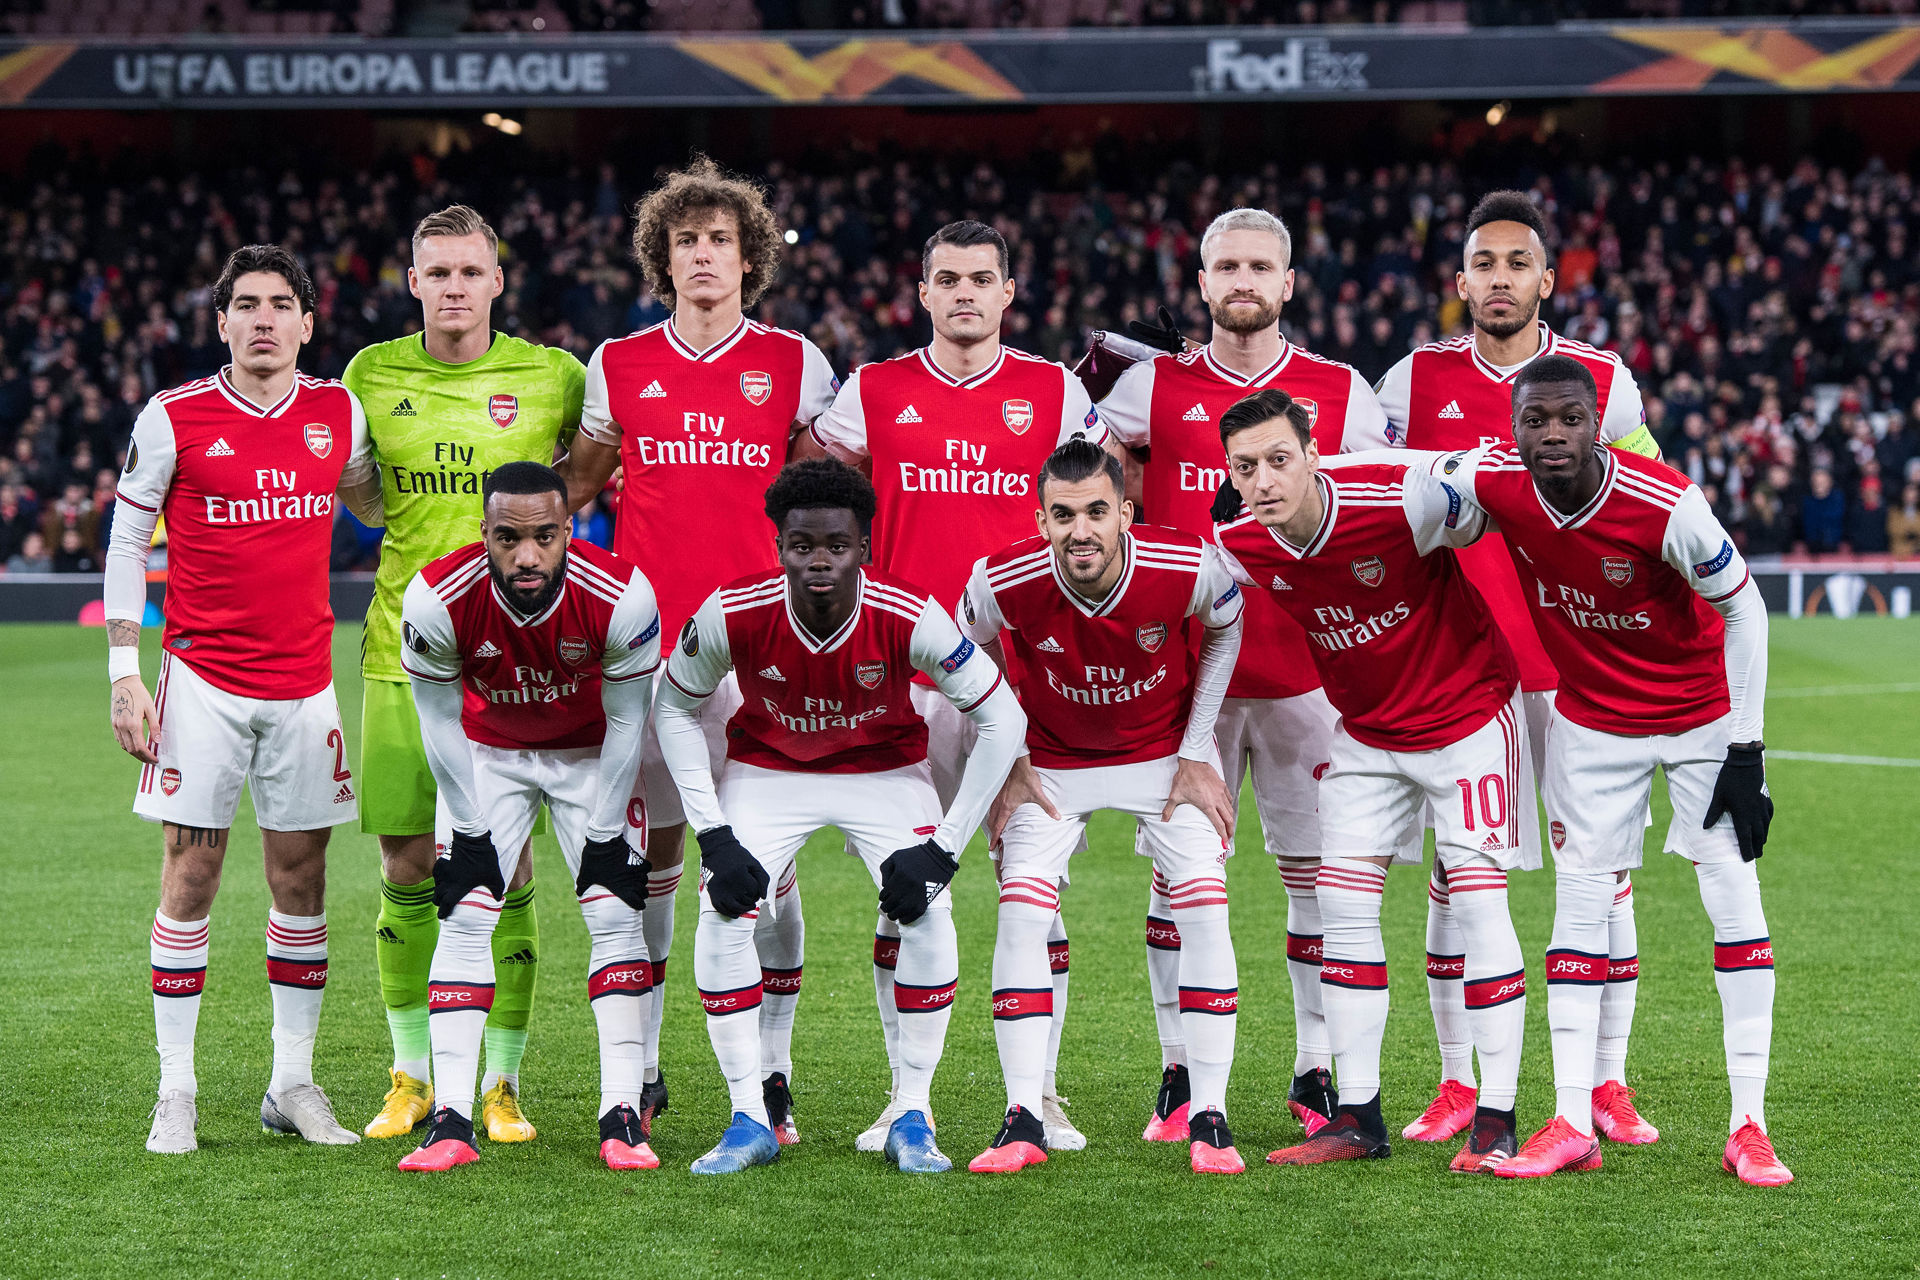 Danh Sách Những Cầu Thủ Cực Chất Trong đội Hình Arsenal 2019